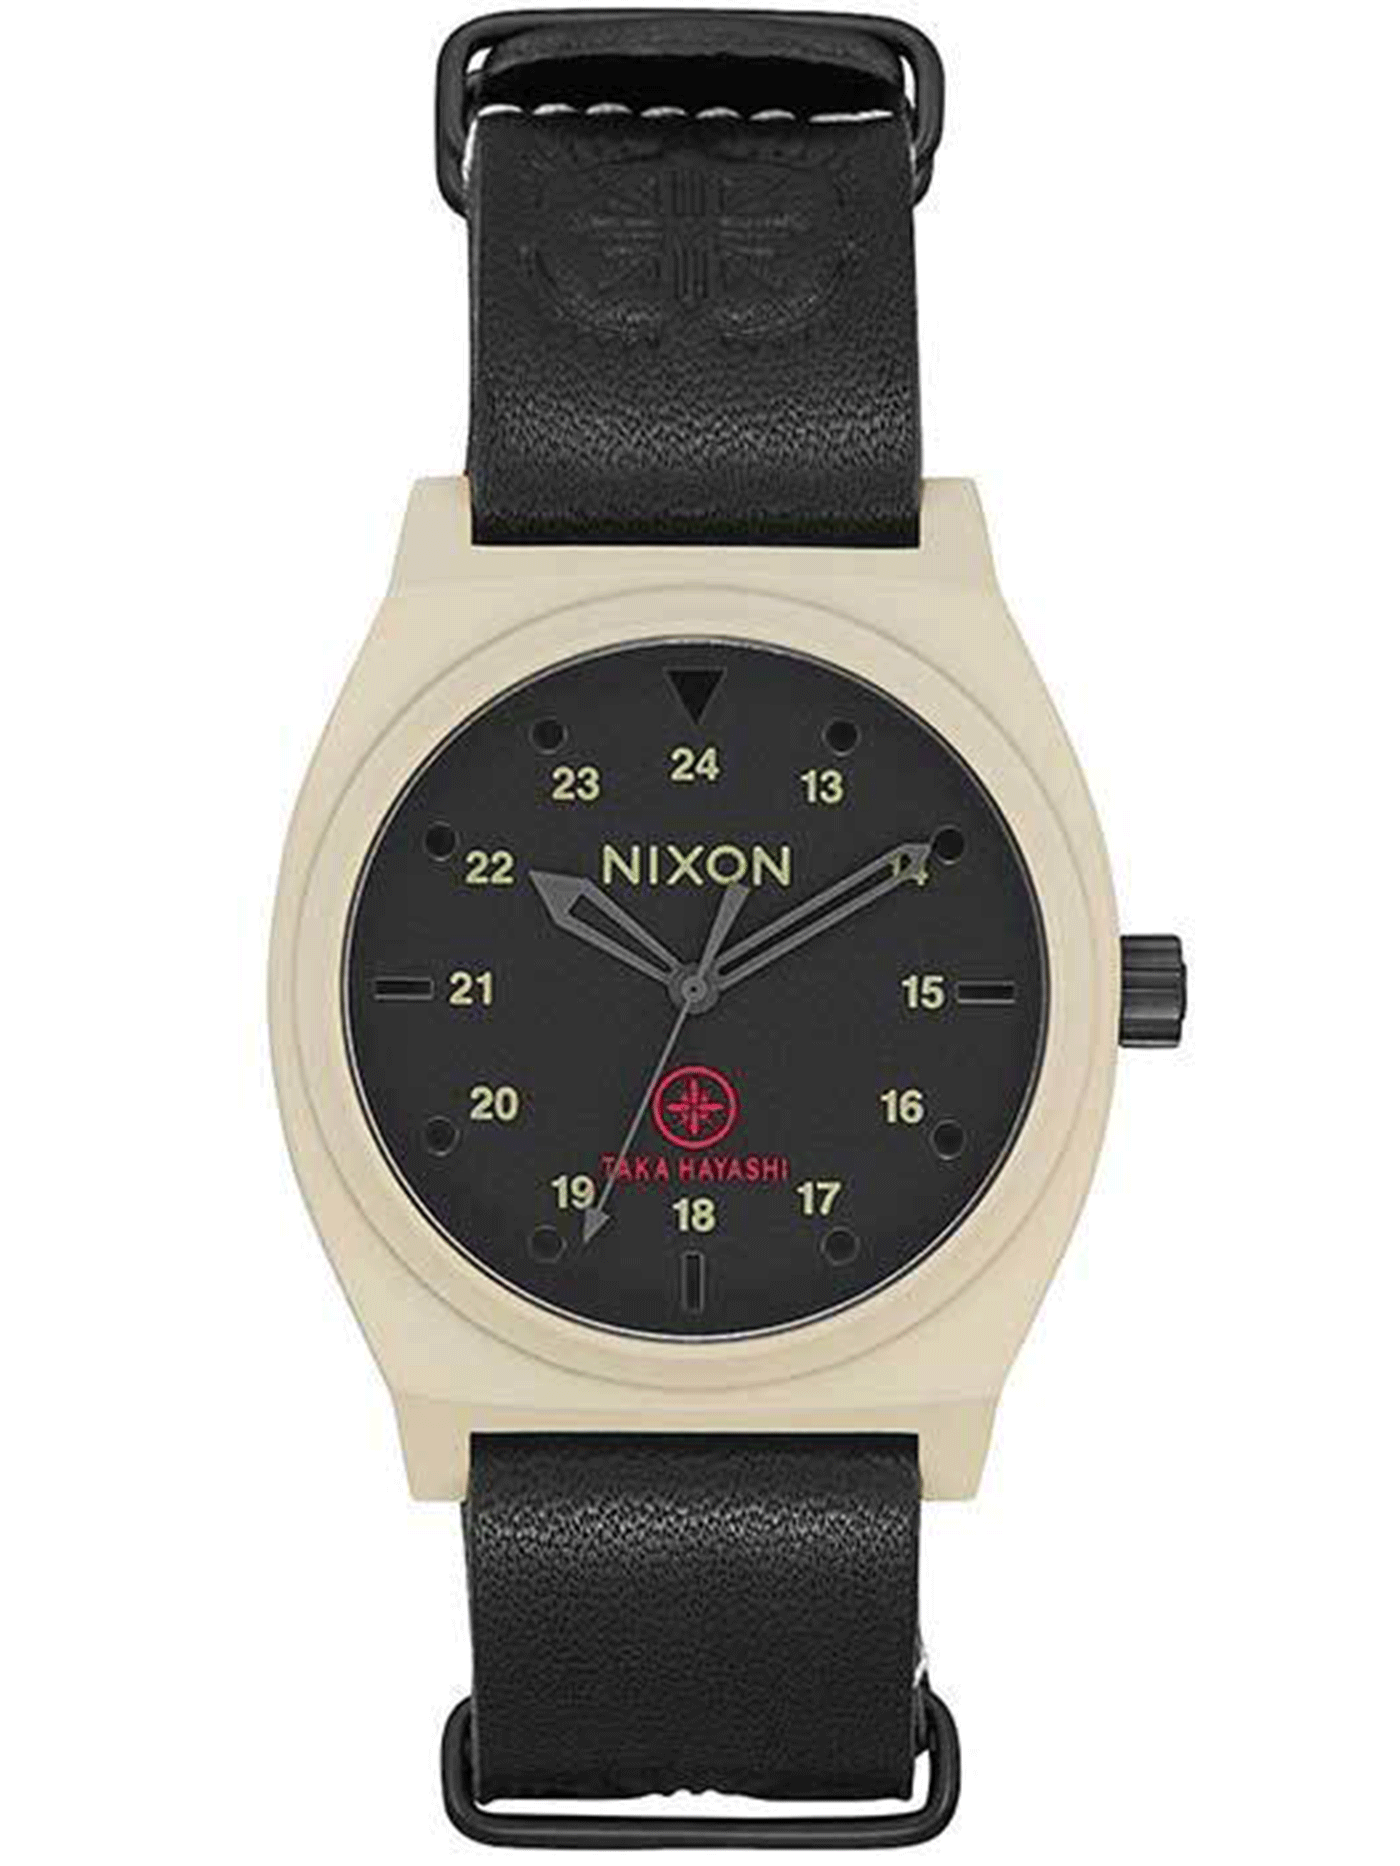 Nixon x Taka Hayashi LTD The Time Teller Watch